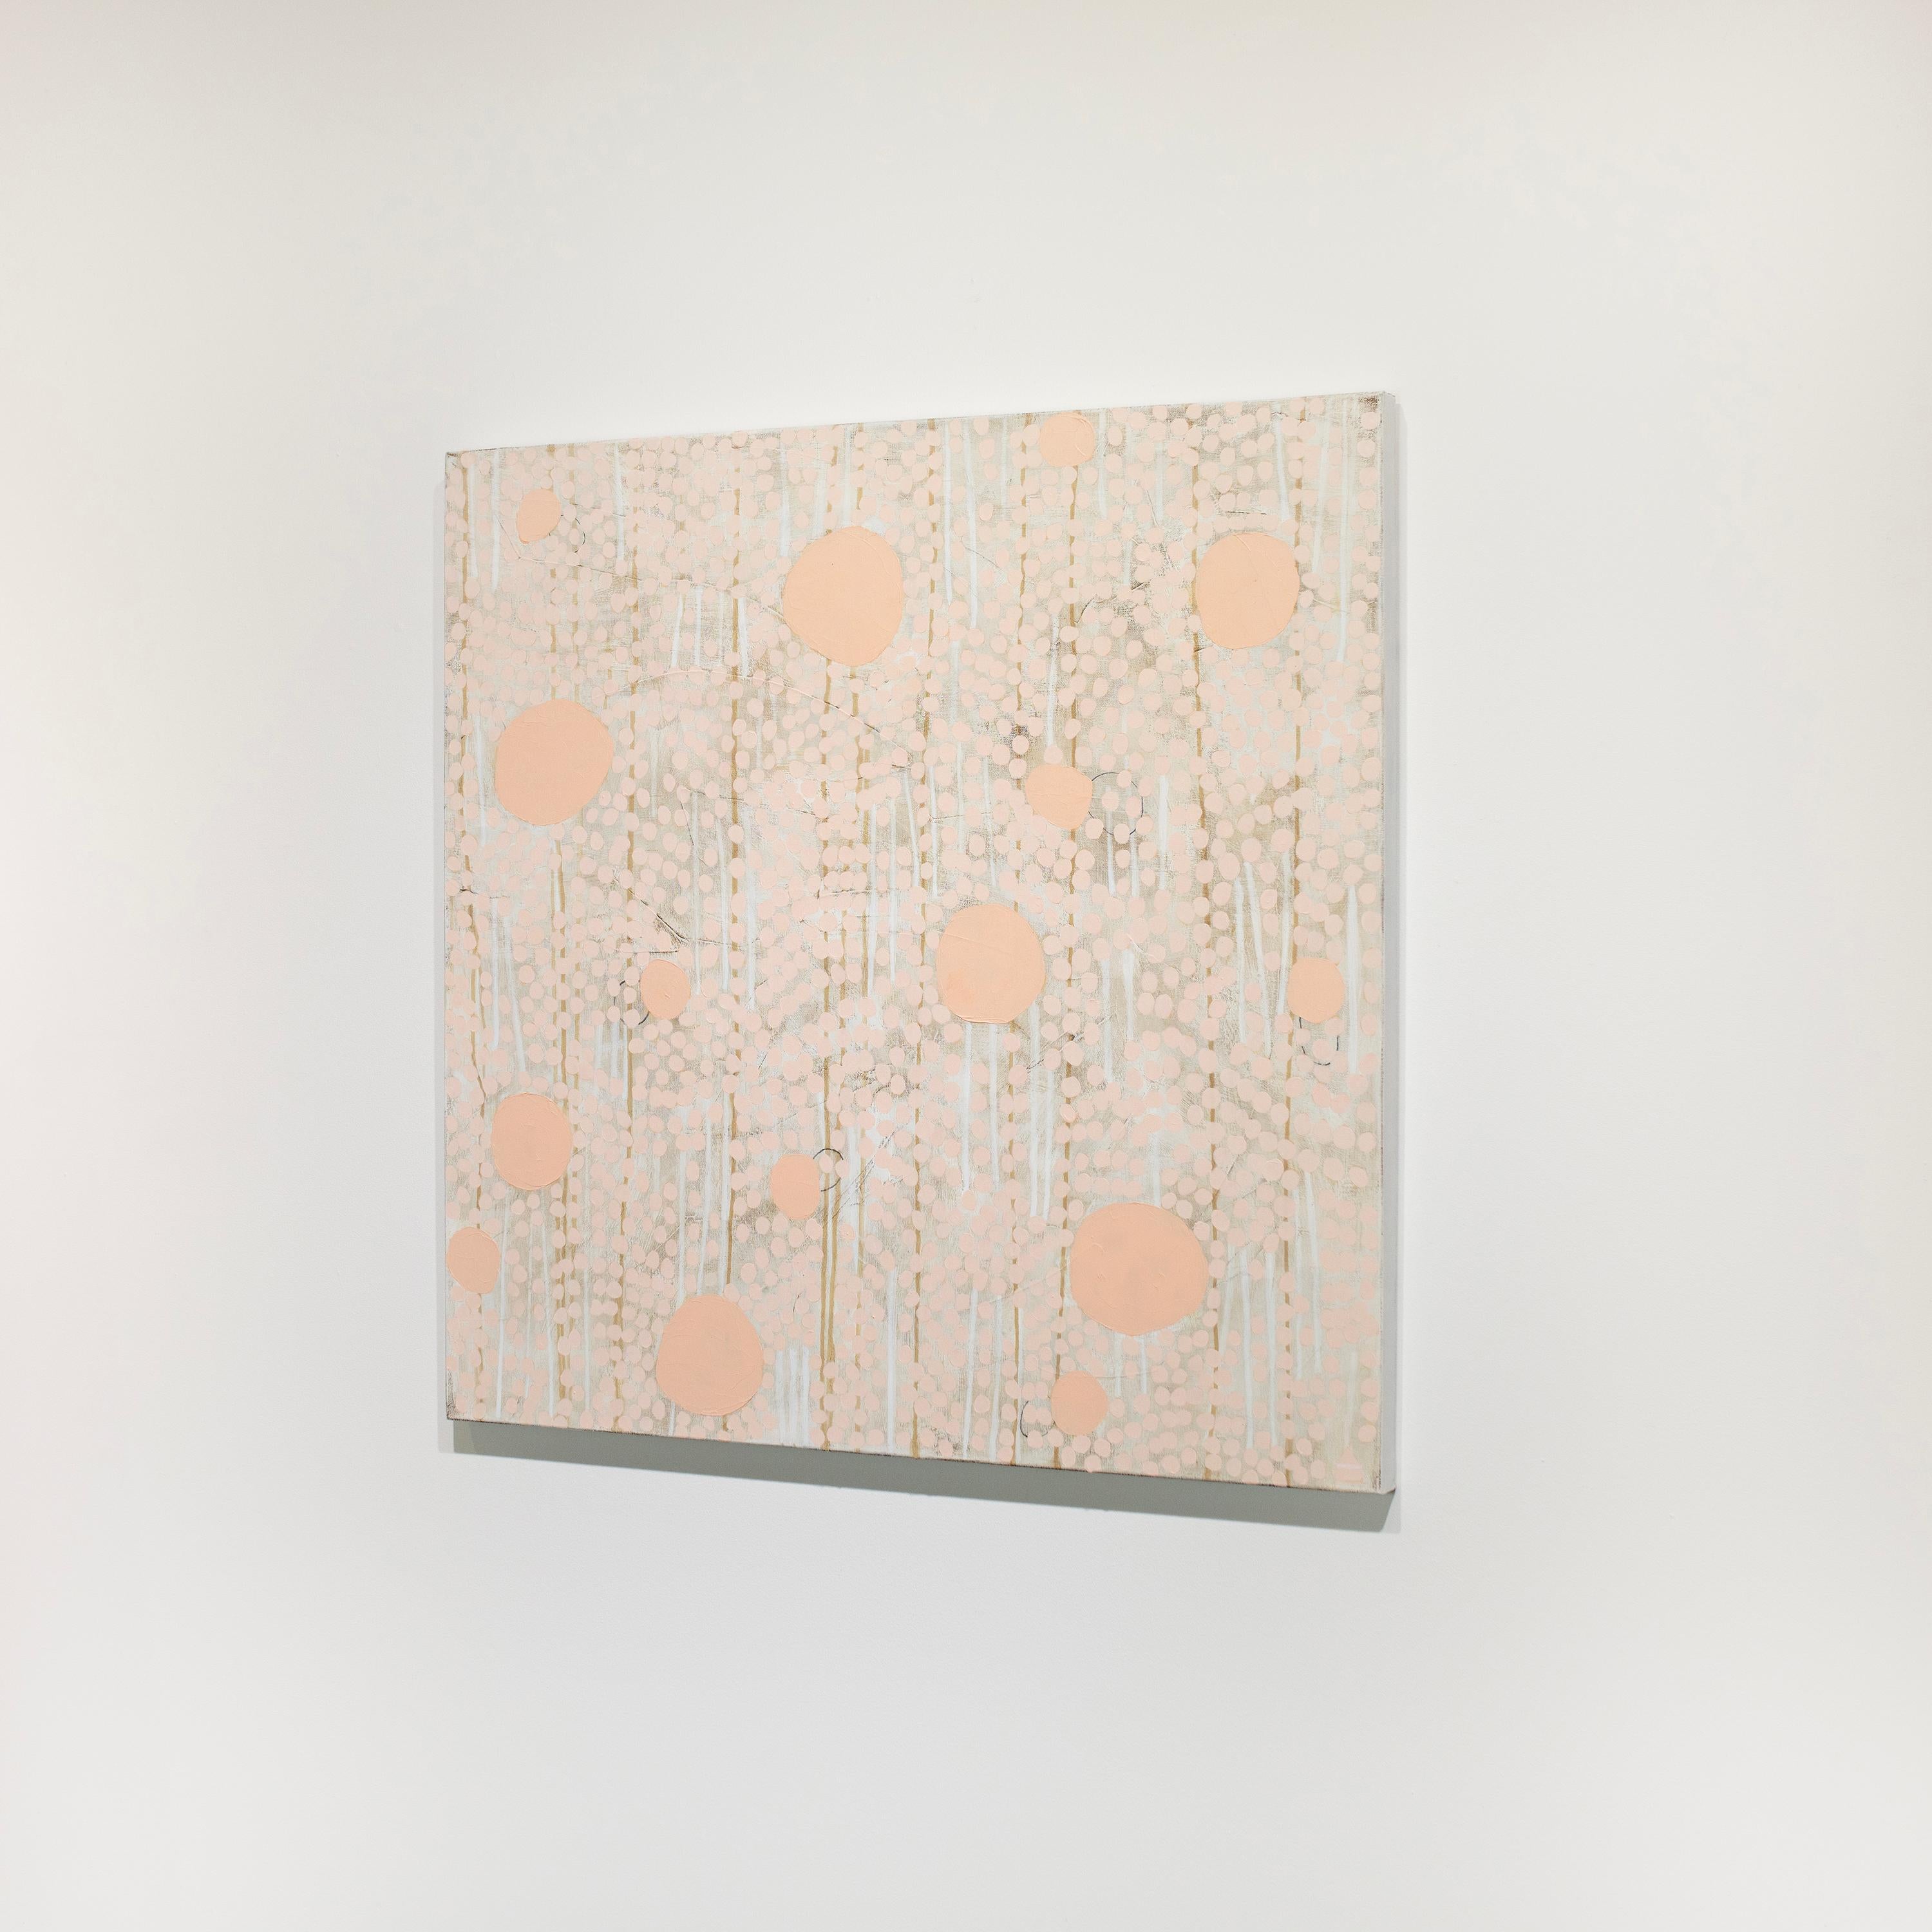 Cette peinture abstraite de Sofie Swann présente une palette d'orange vif et chaud avec des formes circulaires de différentes tailles superposées sur un blanc imparfait et des lignes verticales dorées. Cette peinture est réalisée sur une toile